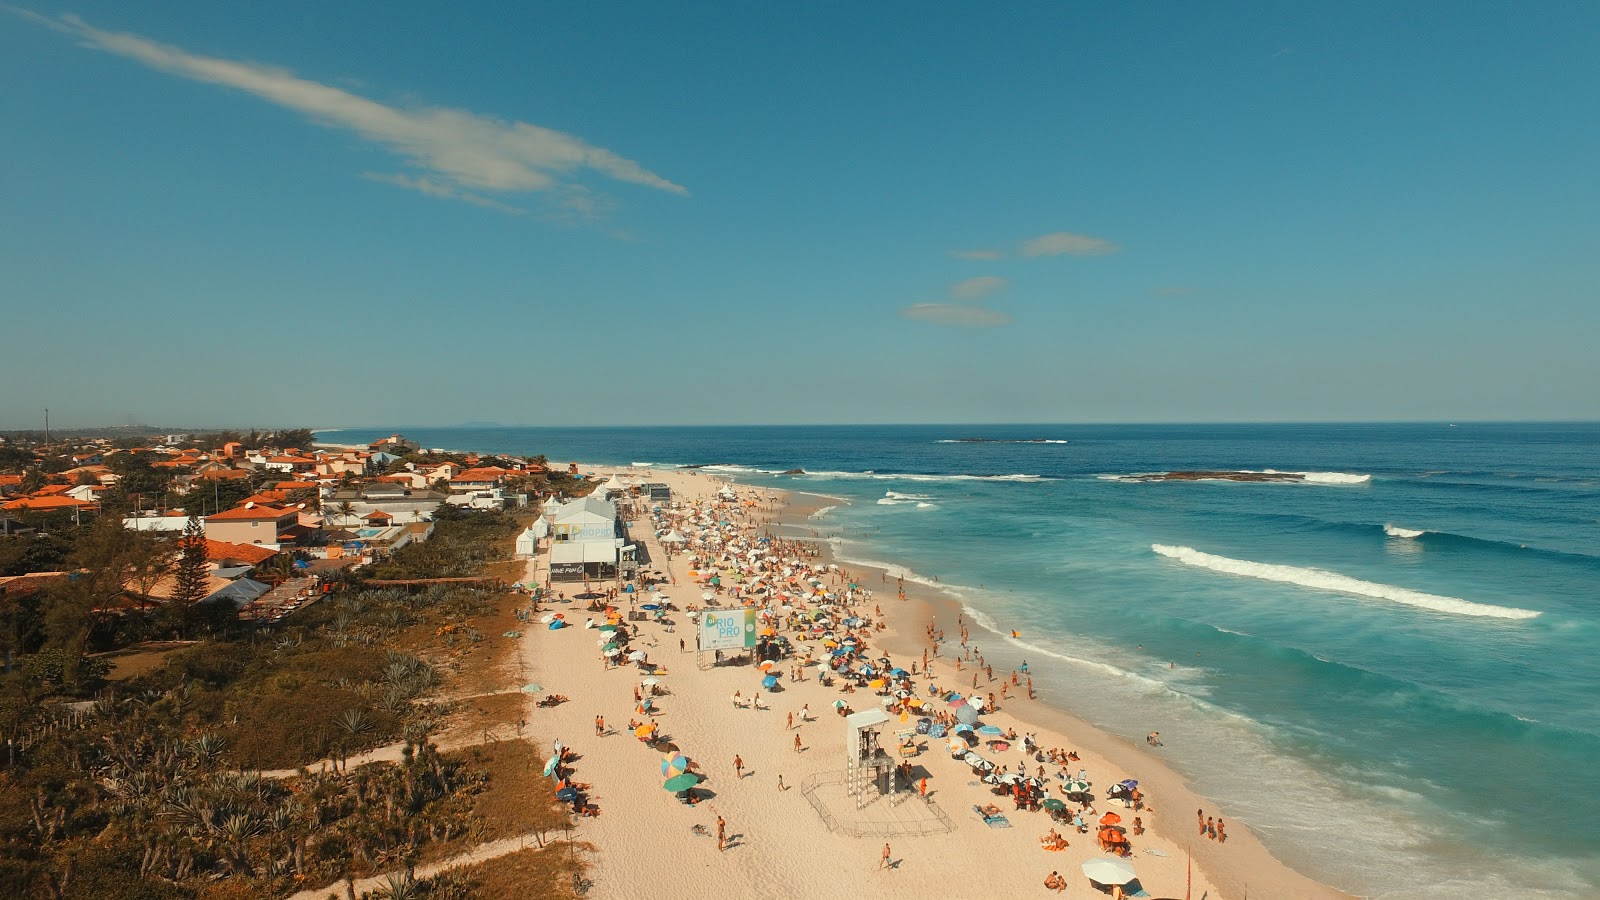 Praia de Itauna'in fotoğrafı imkanlar alanı